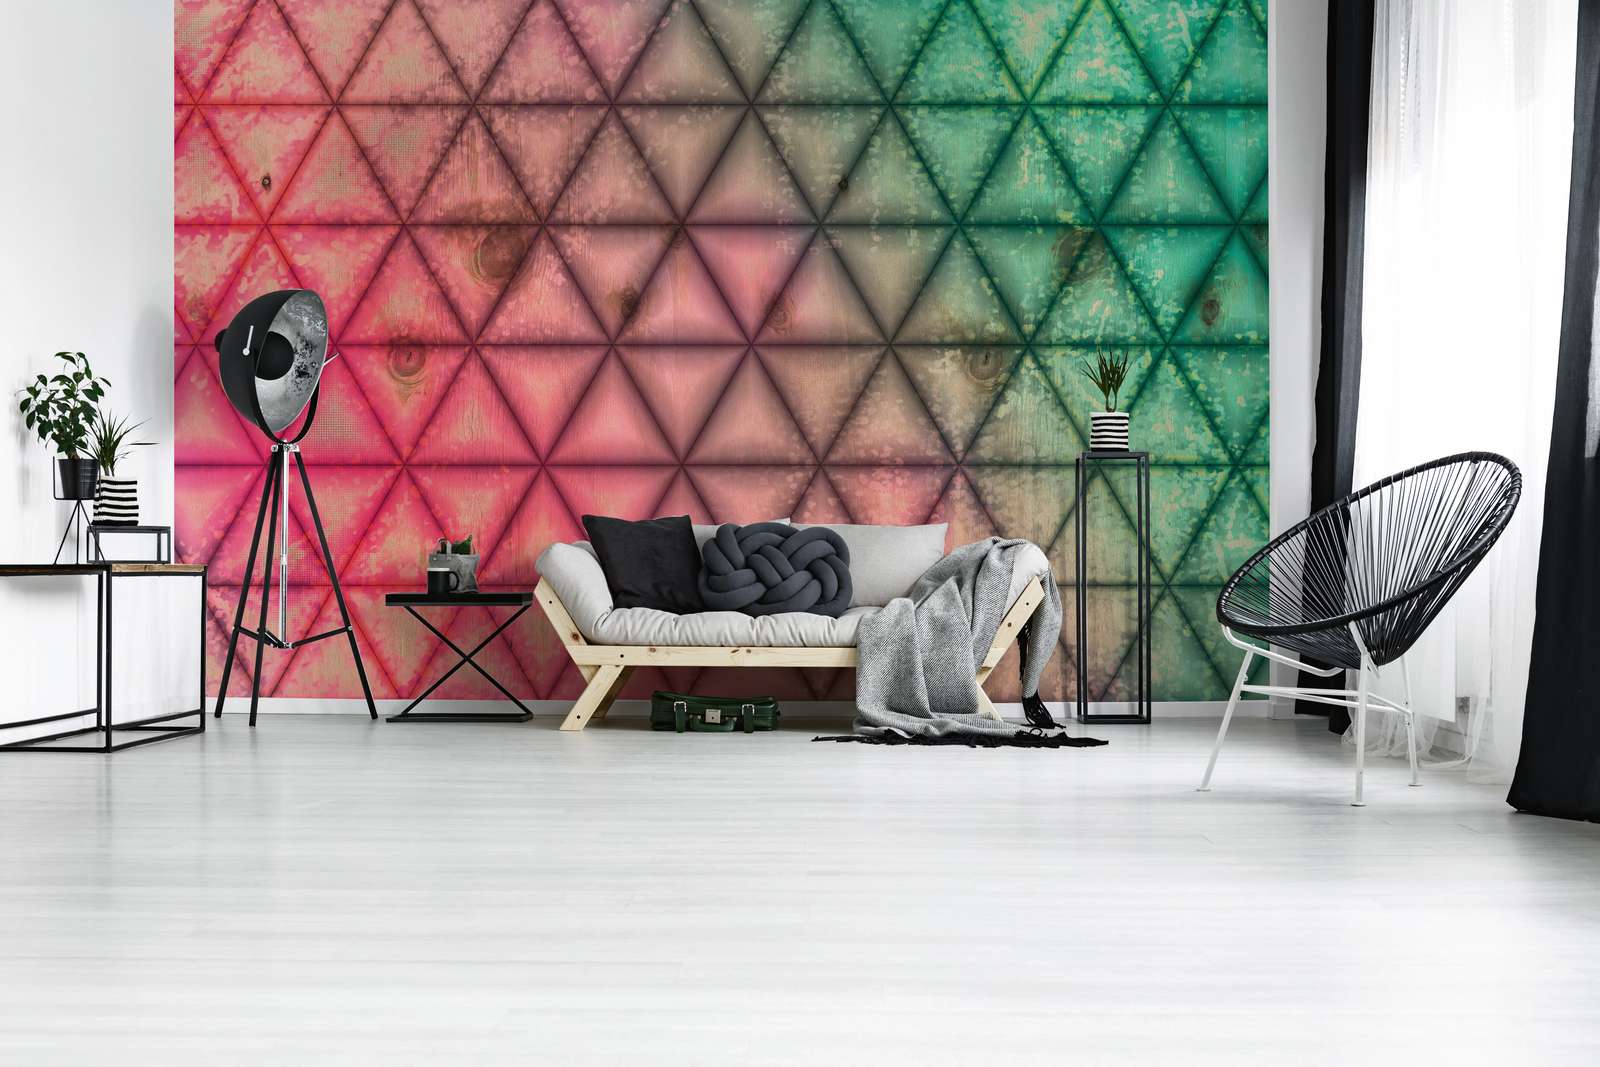             Digital behang geometrisch driehoekpatroon in houtlook - groen, roze
        